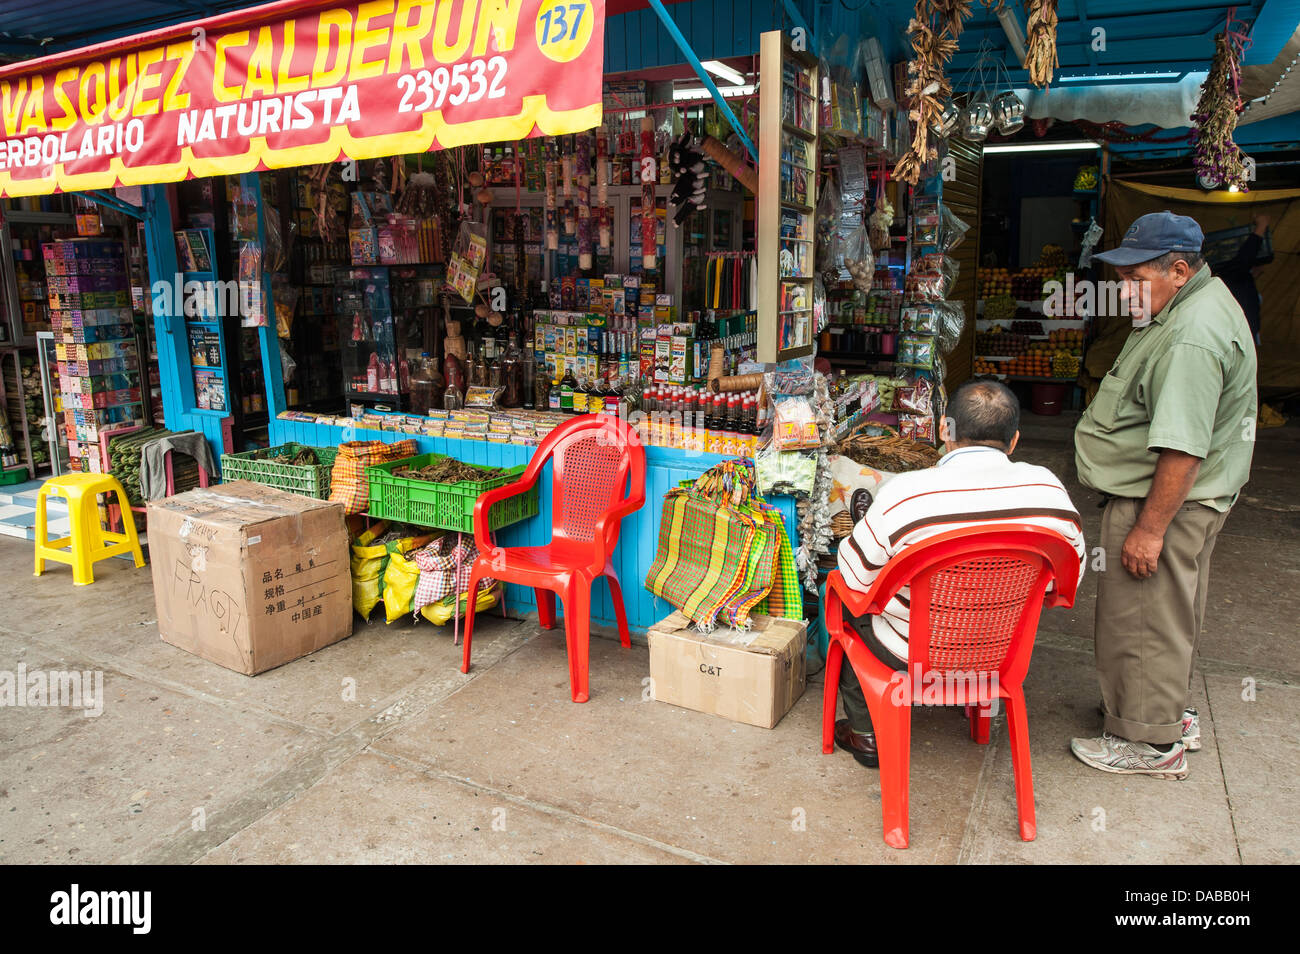 Les marchandises sèches shop stand stand stand commercial du vendeur dans le marché local du marché central à Chiclayo, Pérou. Banque D'Images